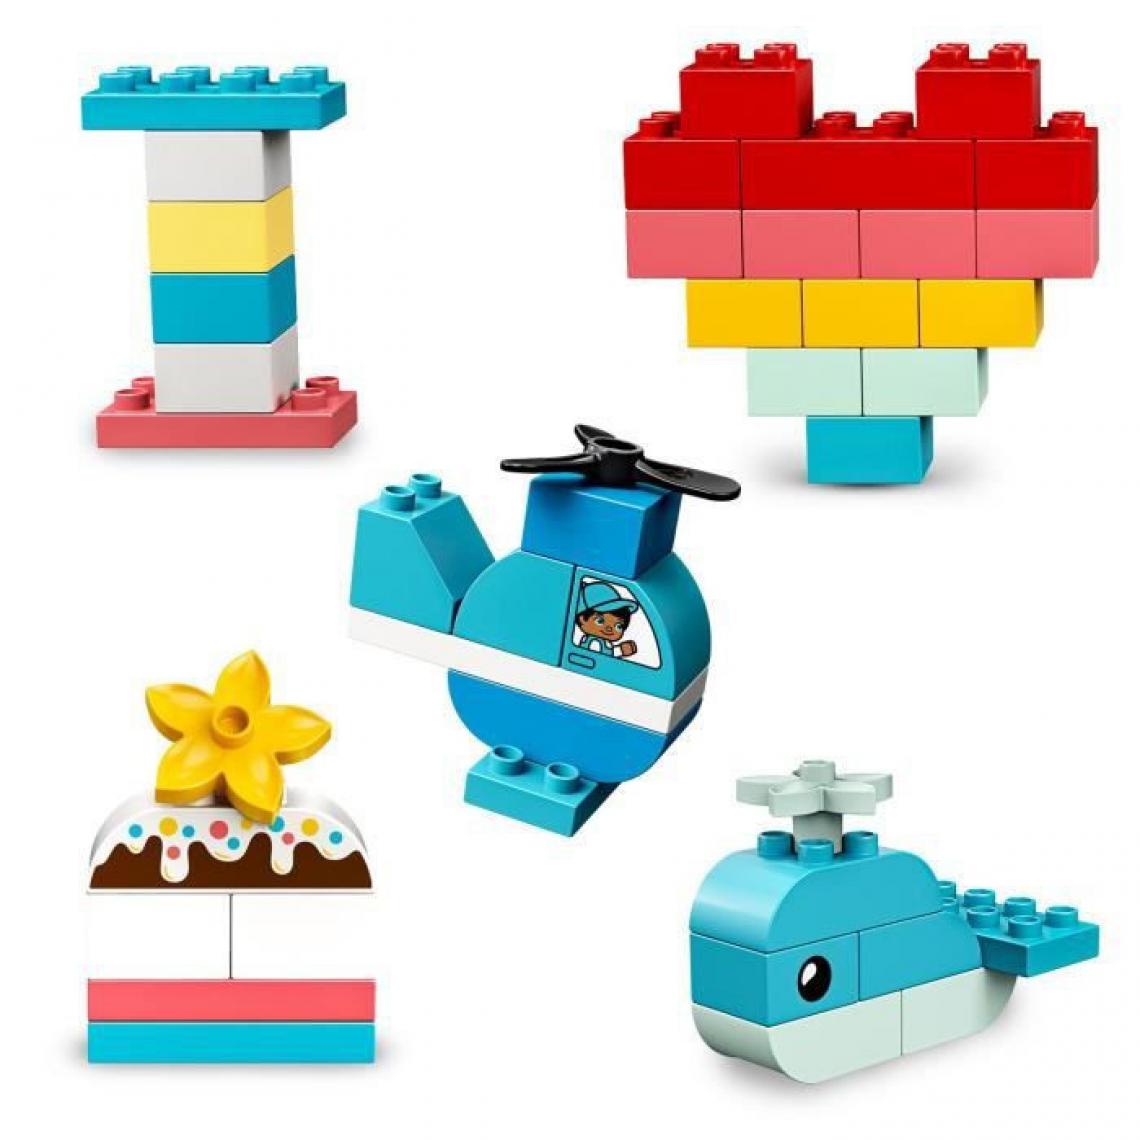 Lego - LEGO 10909 DUPLO Classic La Boîte Coeur Premier Set, Jouet Educatif, Briques de construction pour Bébé 1 an et demi - Briques et blocs